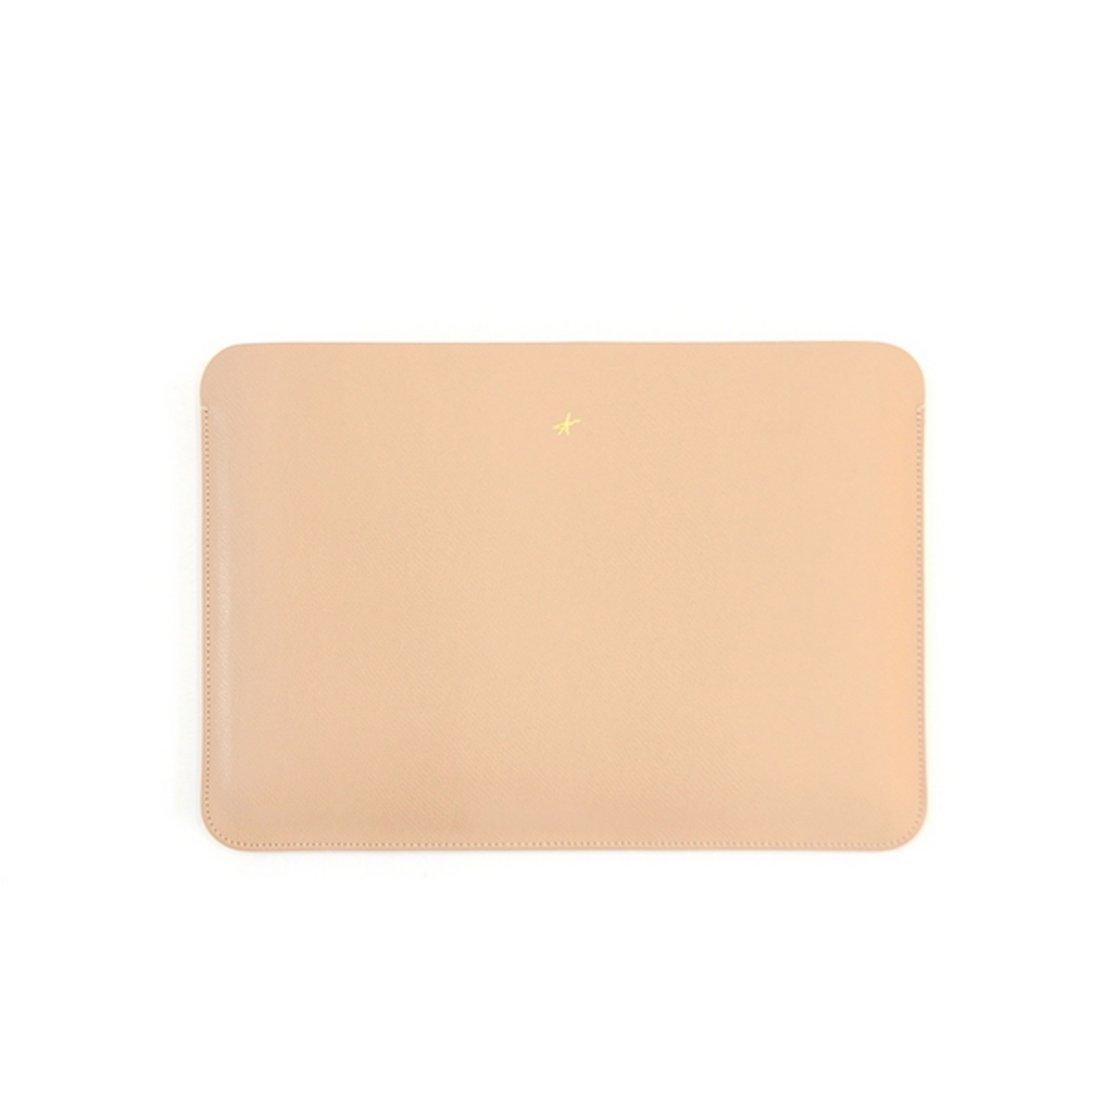 맥북프로 신형 터치바 Macbook Pro 맥북 13형 가죽 파우치(로얄베이지) 상품이미지 1